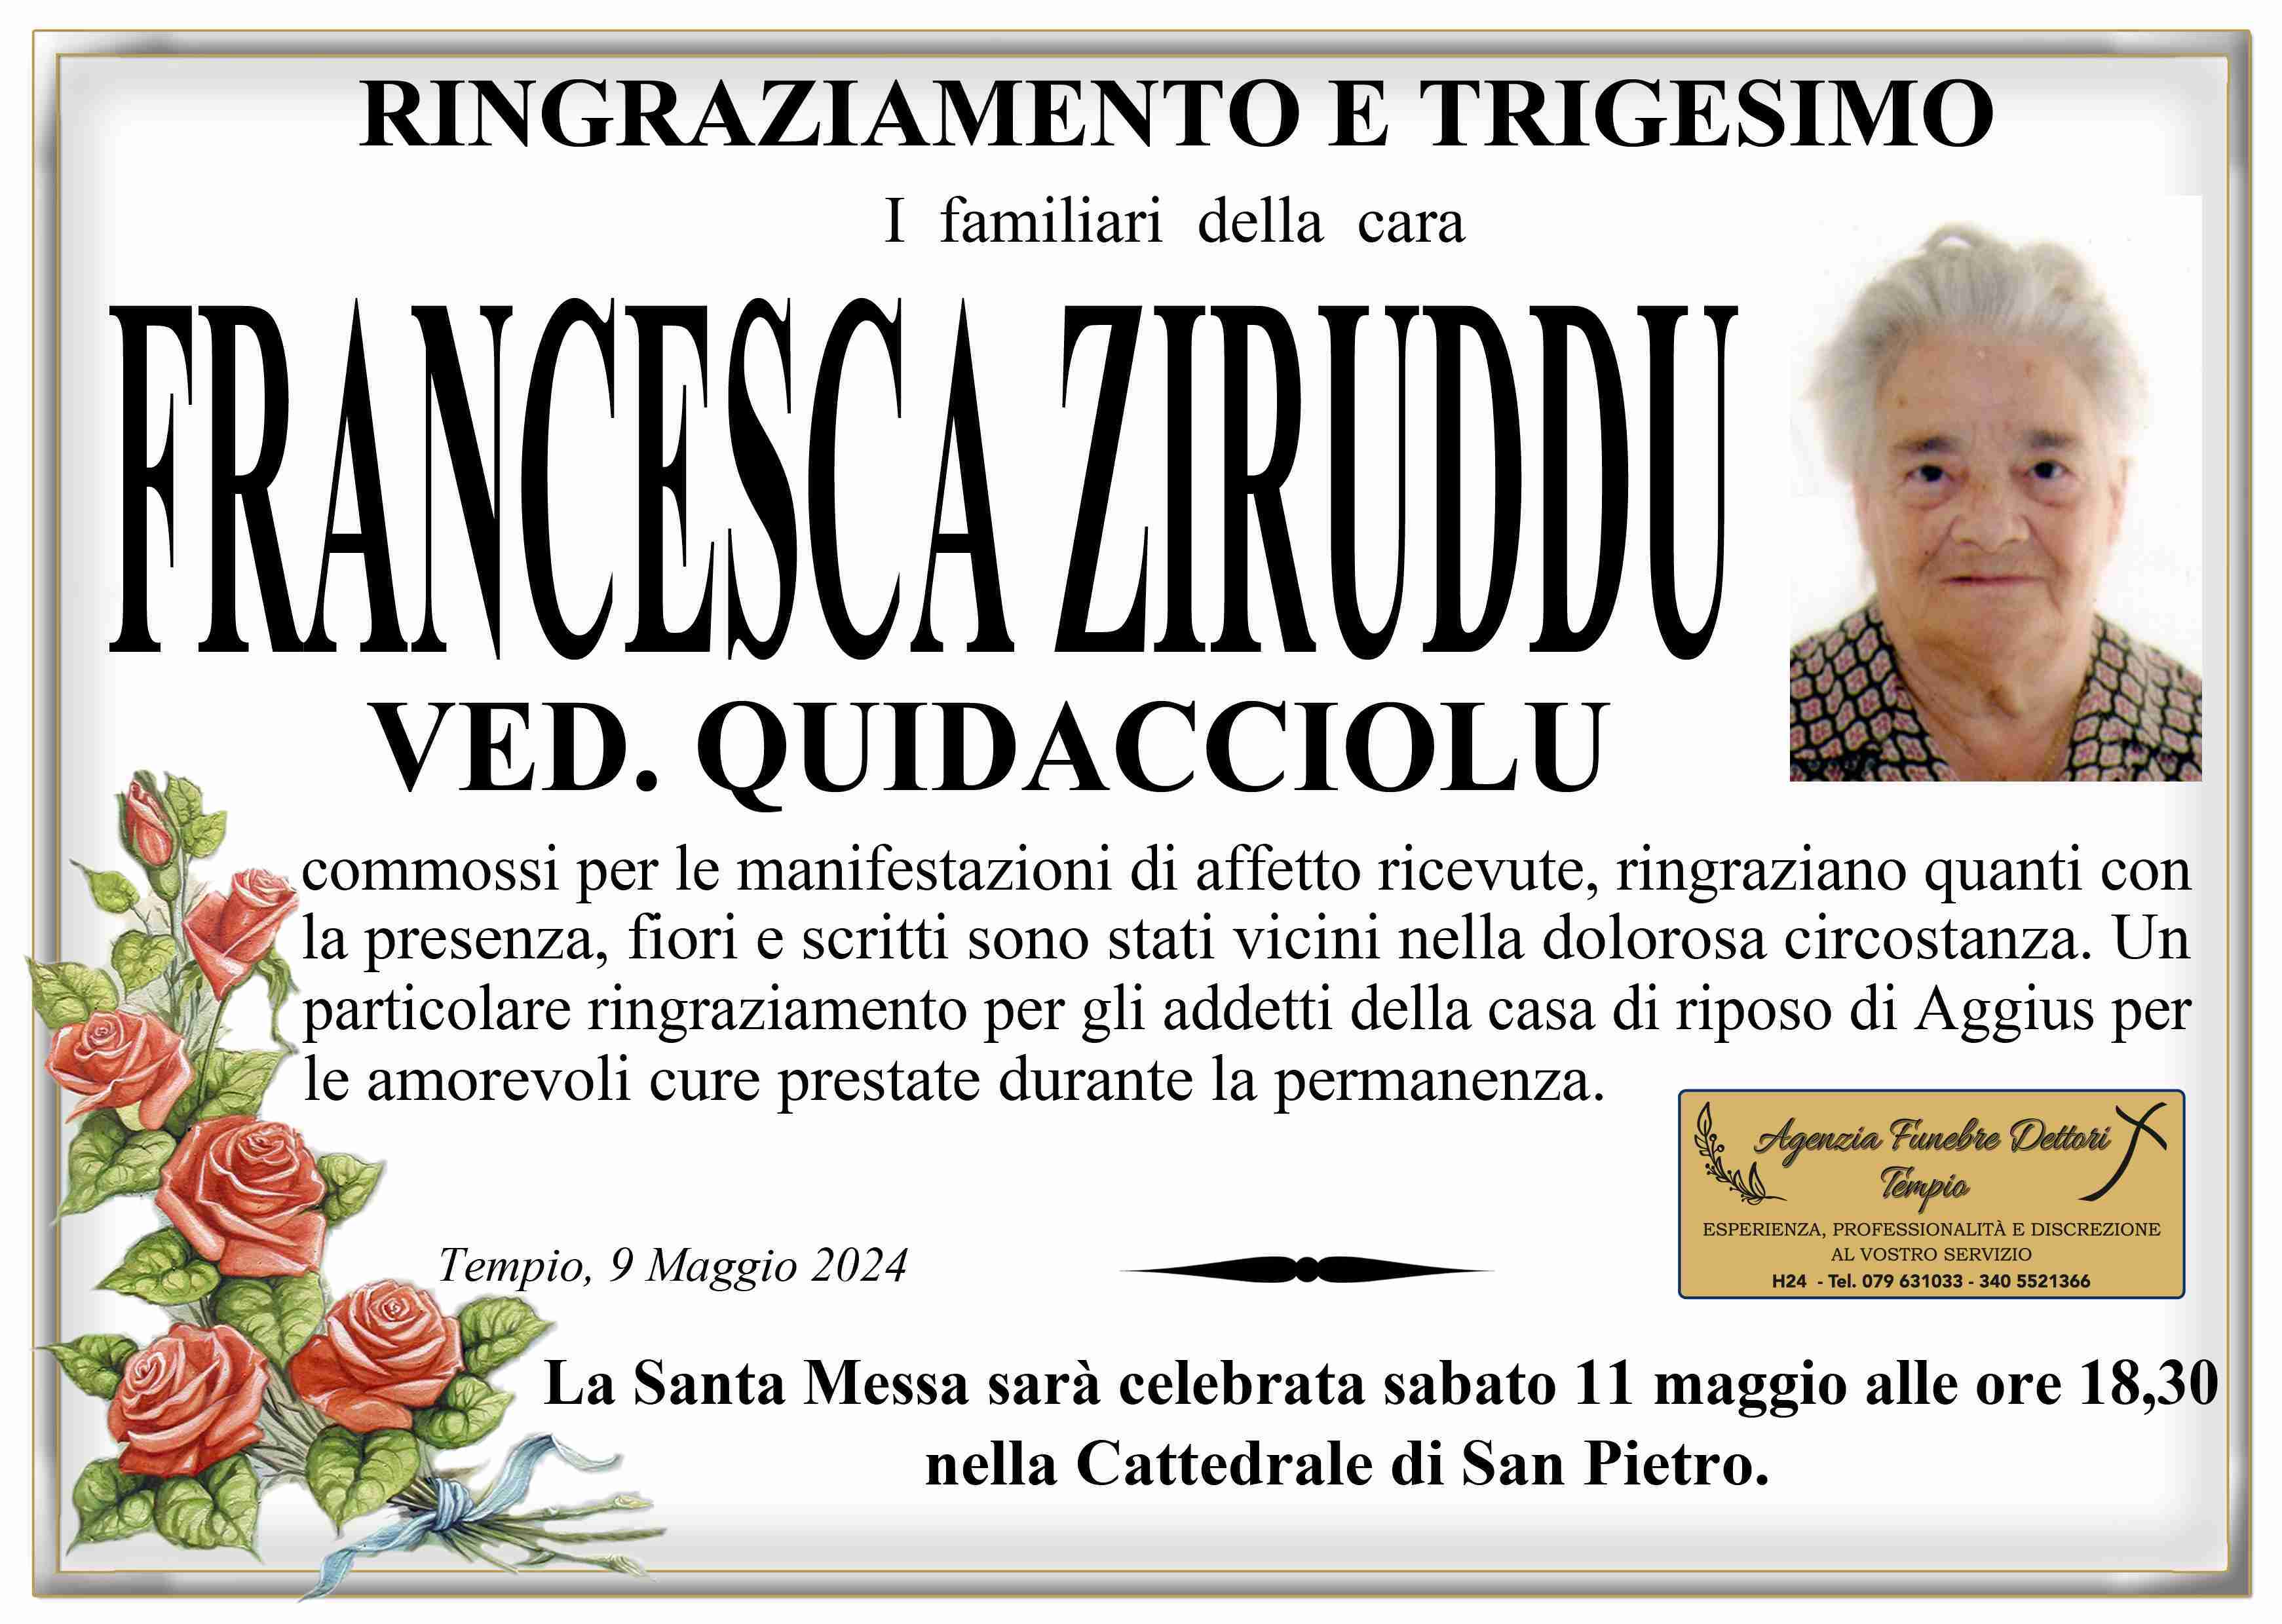 Francesca Ziruddu